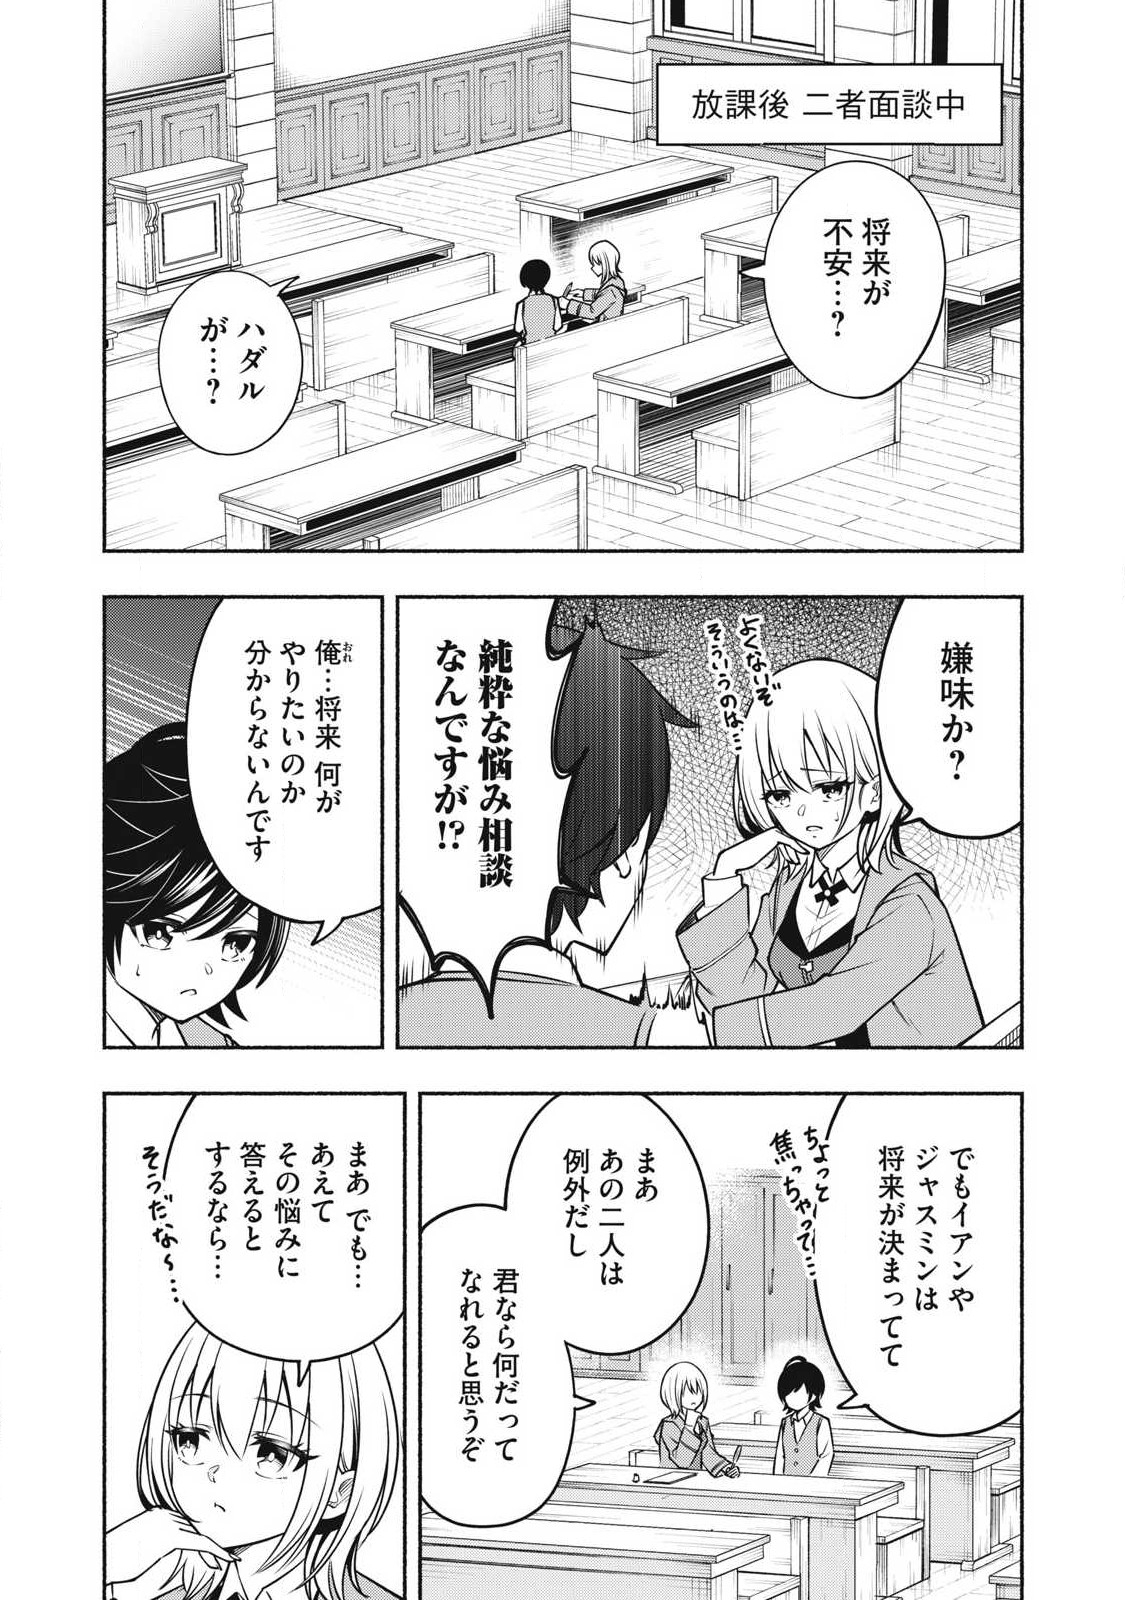 Yama ni Suterareta Ore, Tokage no Youshi ni Naru - Chapter 6.1 - Page 1